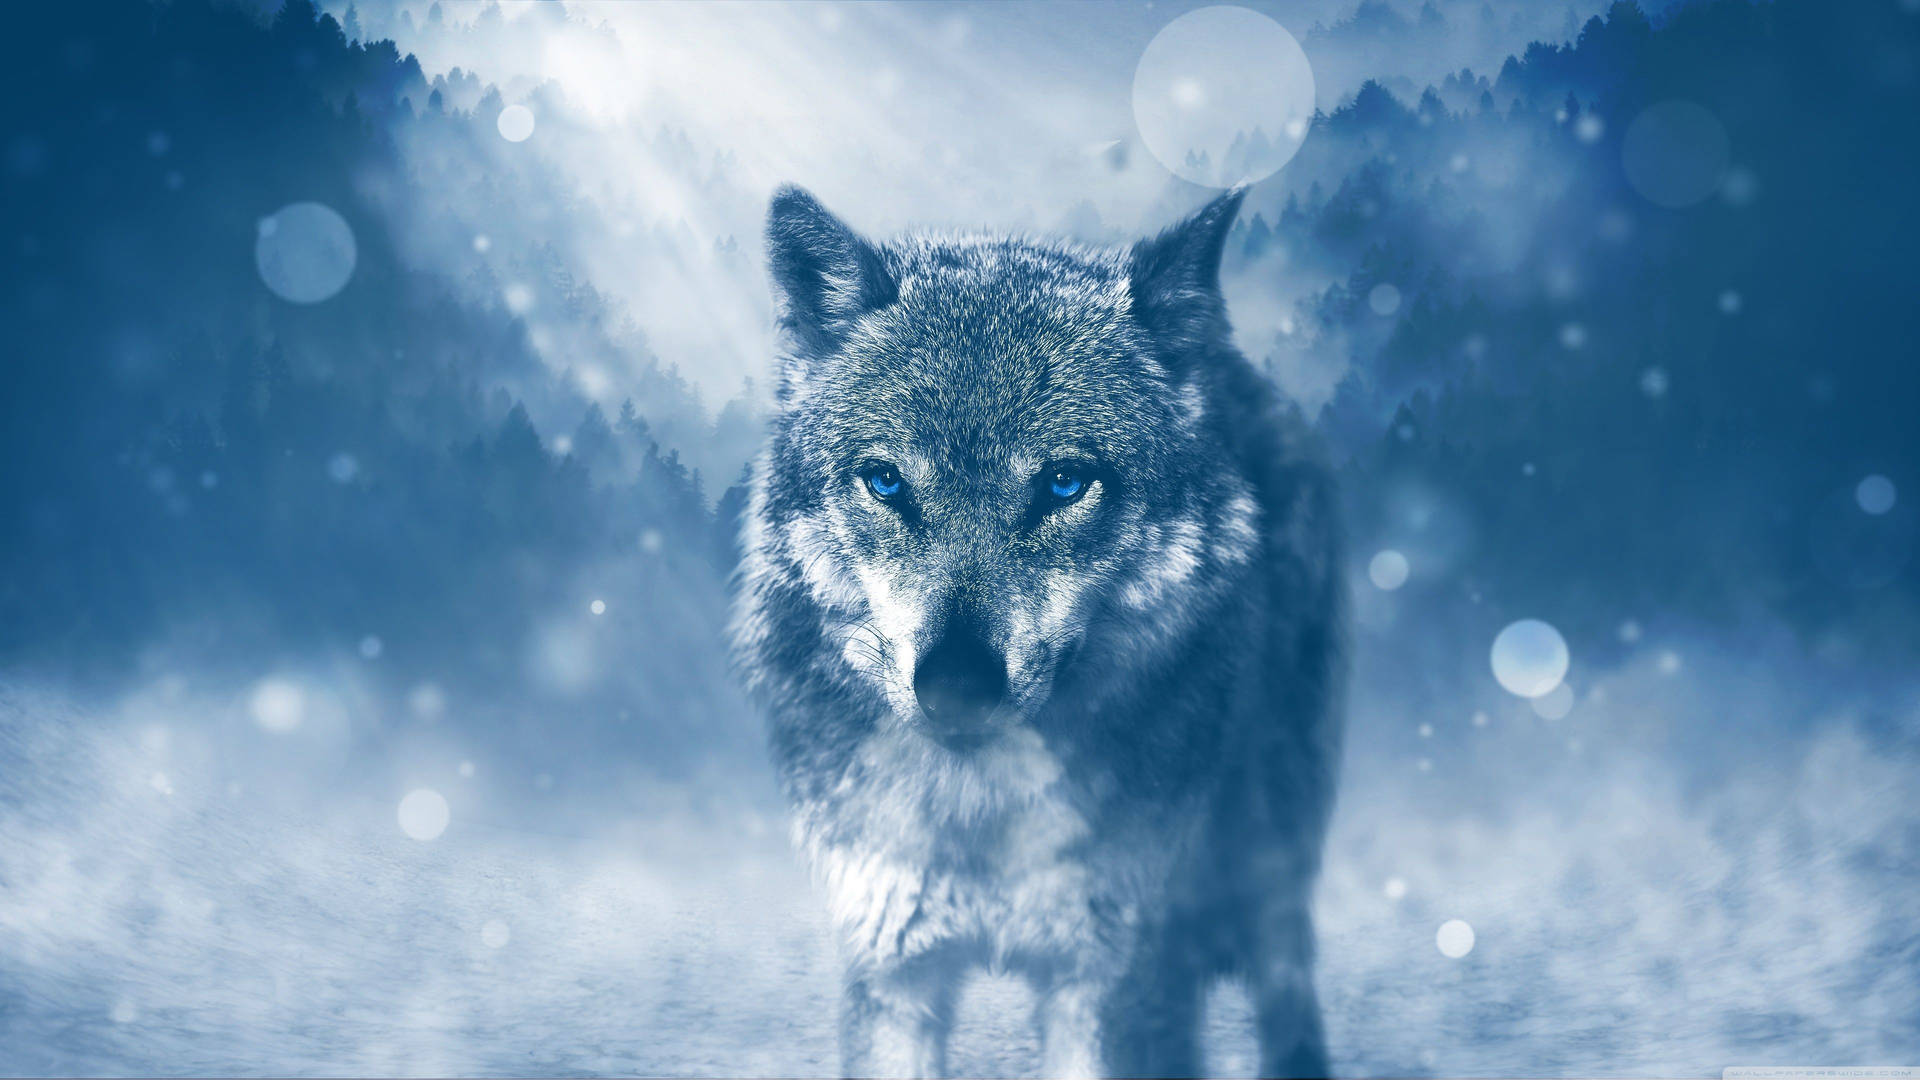 Wolf Winter 4k Ultra Hd Wallpaper